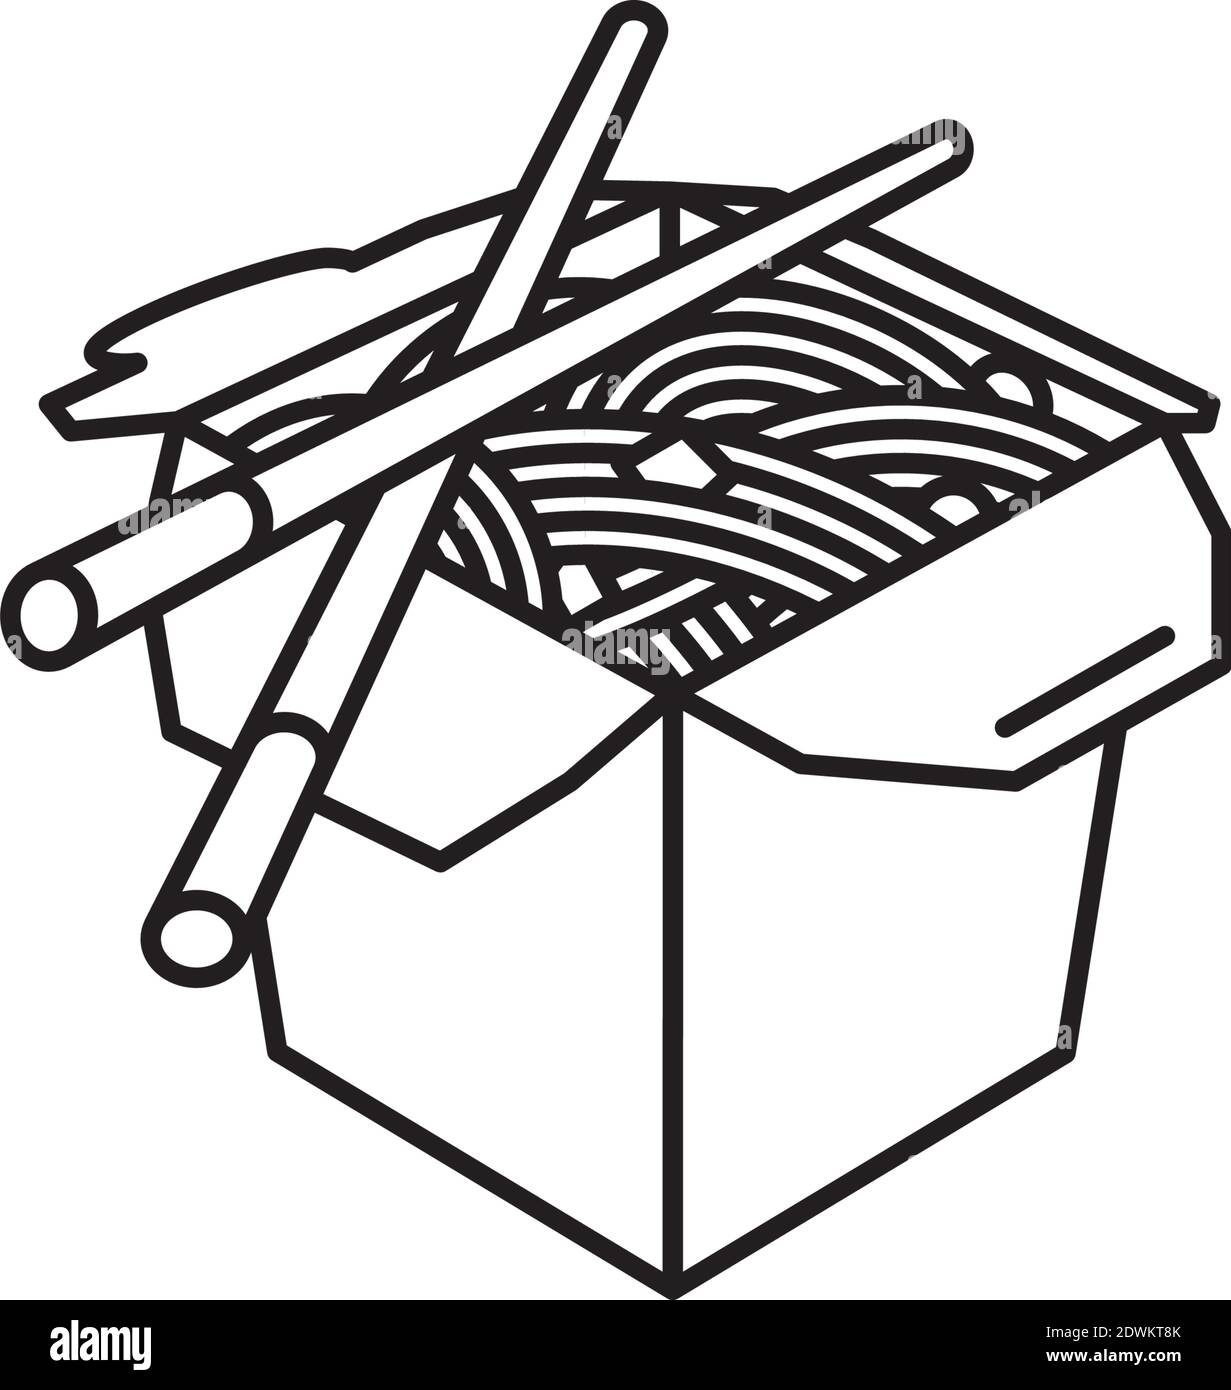 Chinesische Take-Out Food Box und Essstäbchen Vektor-Linie Symbol für Chop Suey Day am 29. August. Asiatische Lebensmittel Umriss Symbol. Stock Vektor